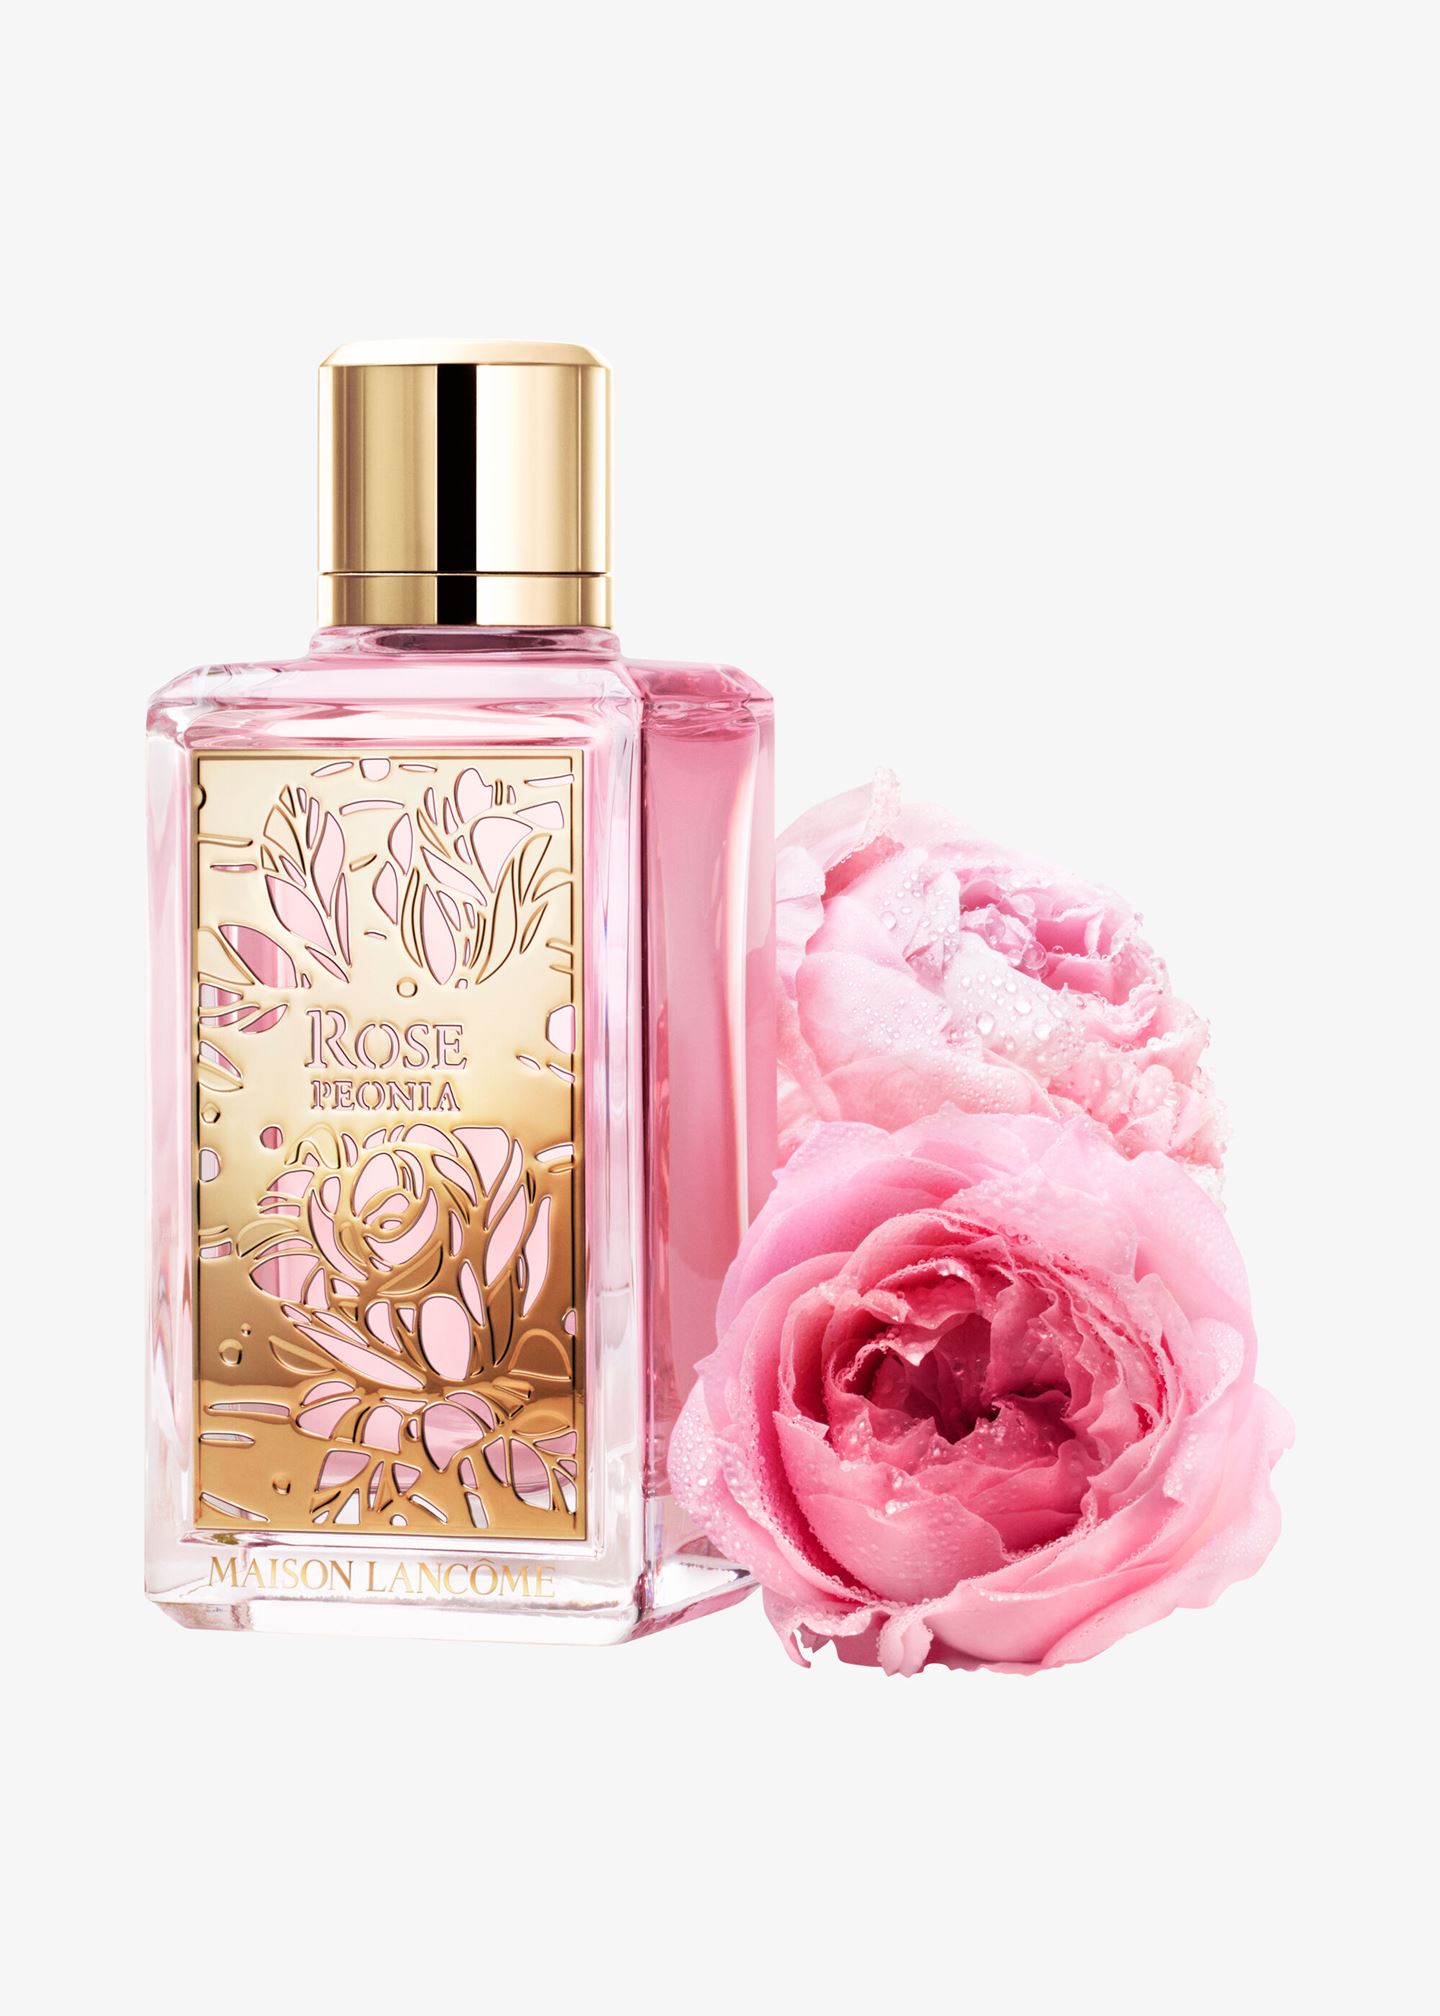 Parfum «Maison Lancôme Les Fleurs d’Eau – Rose Peonia»